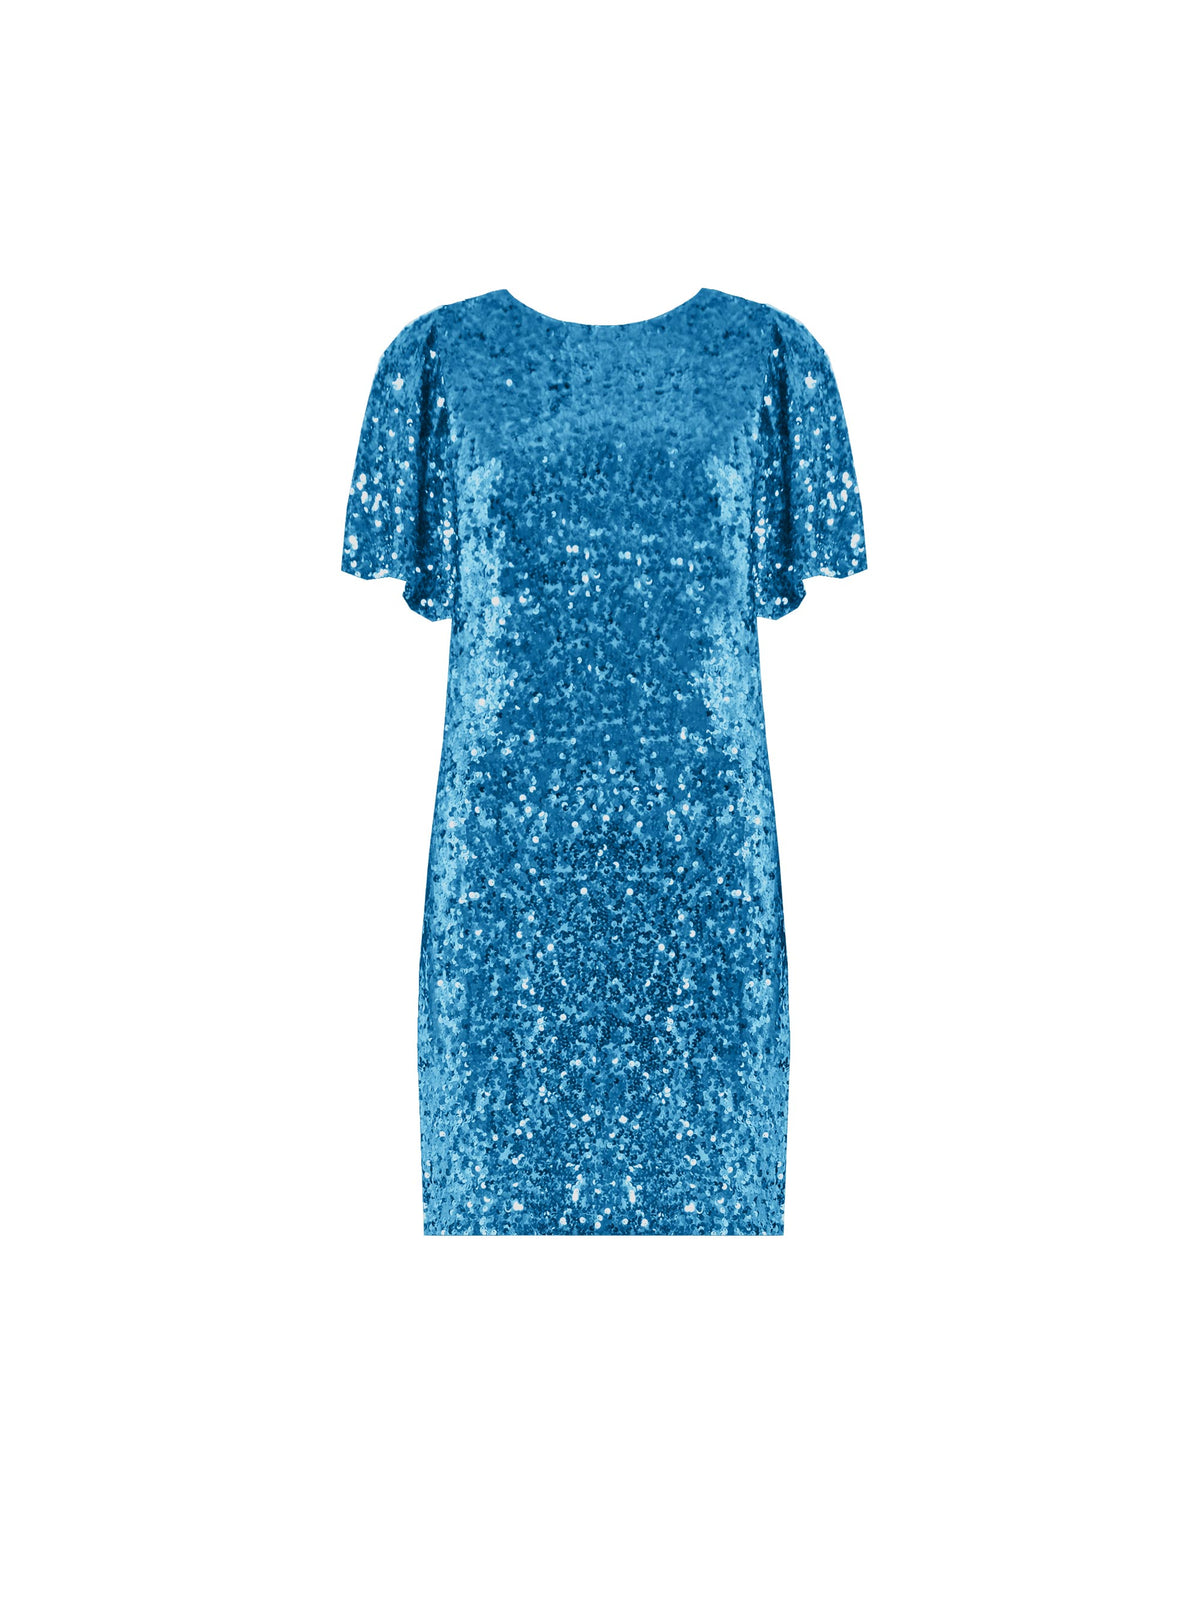 Petite Blue Flutter Sleeve Sequin Dress